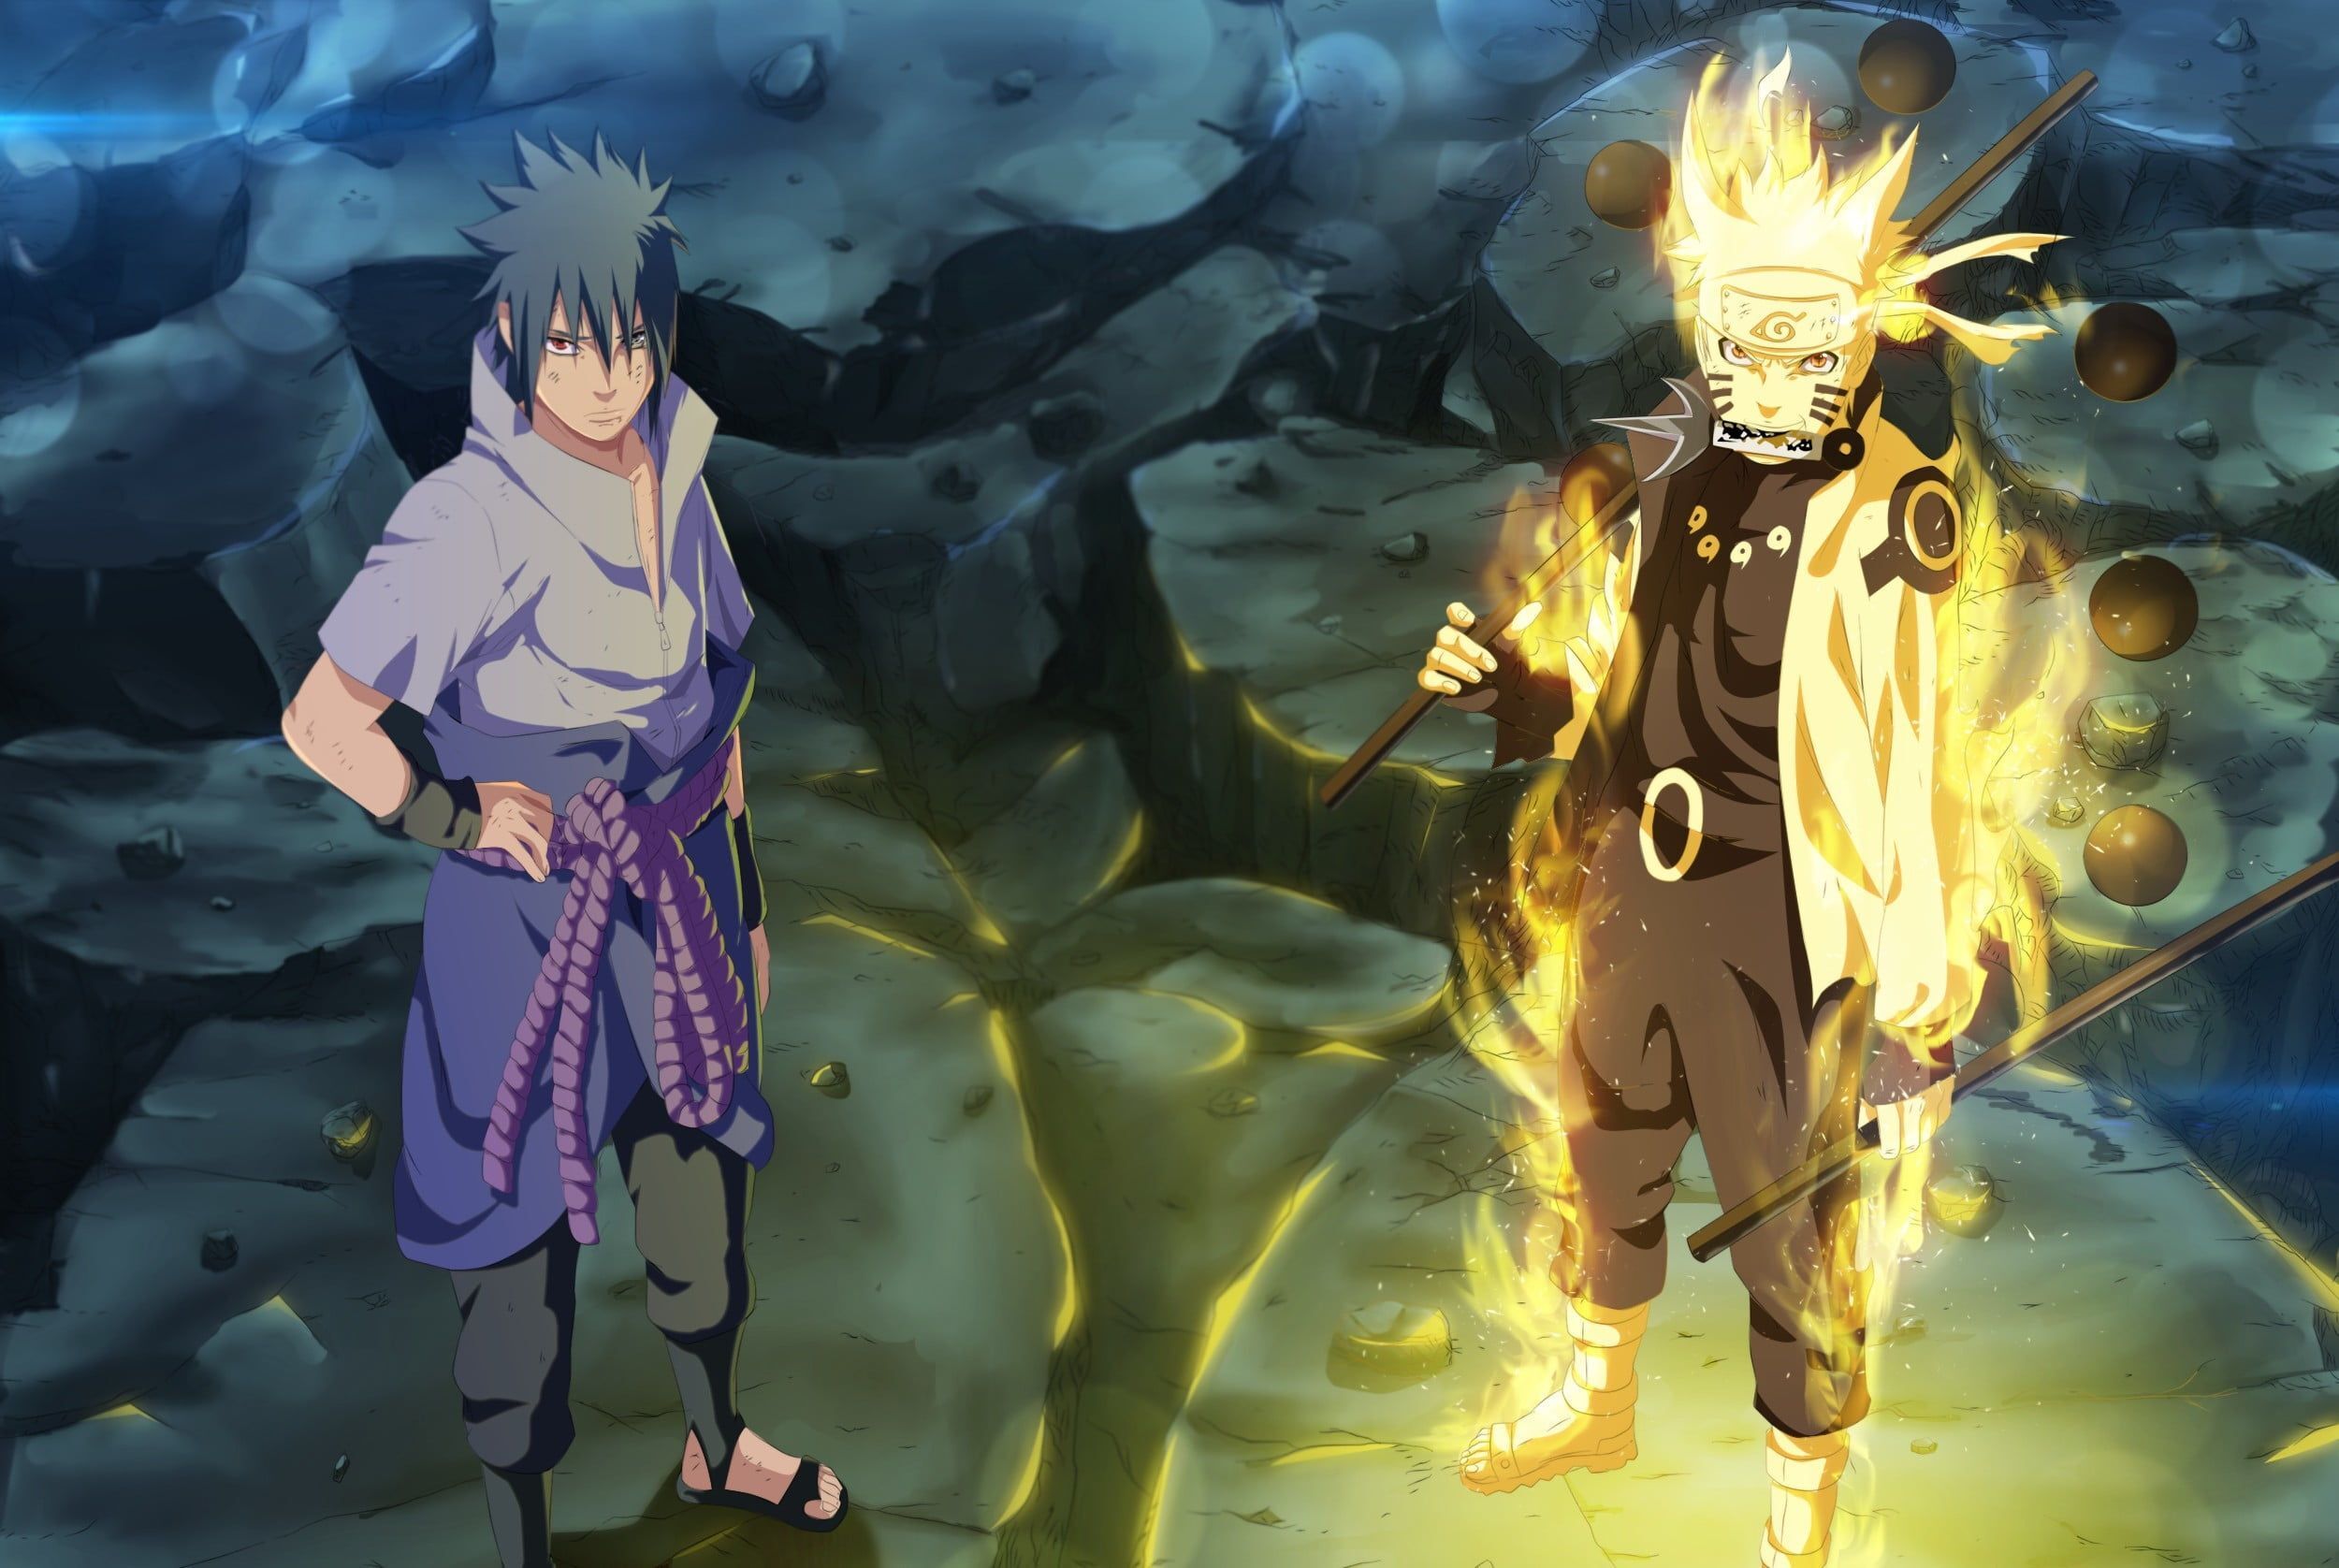 Naruto + Sasuke vs the Admirals + WB and Monster Trio - Battles